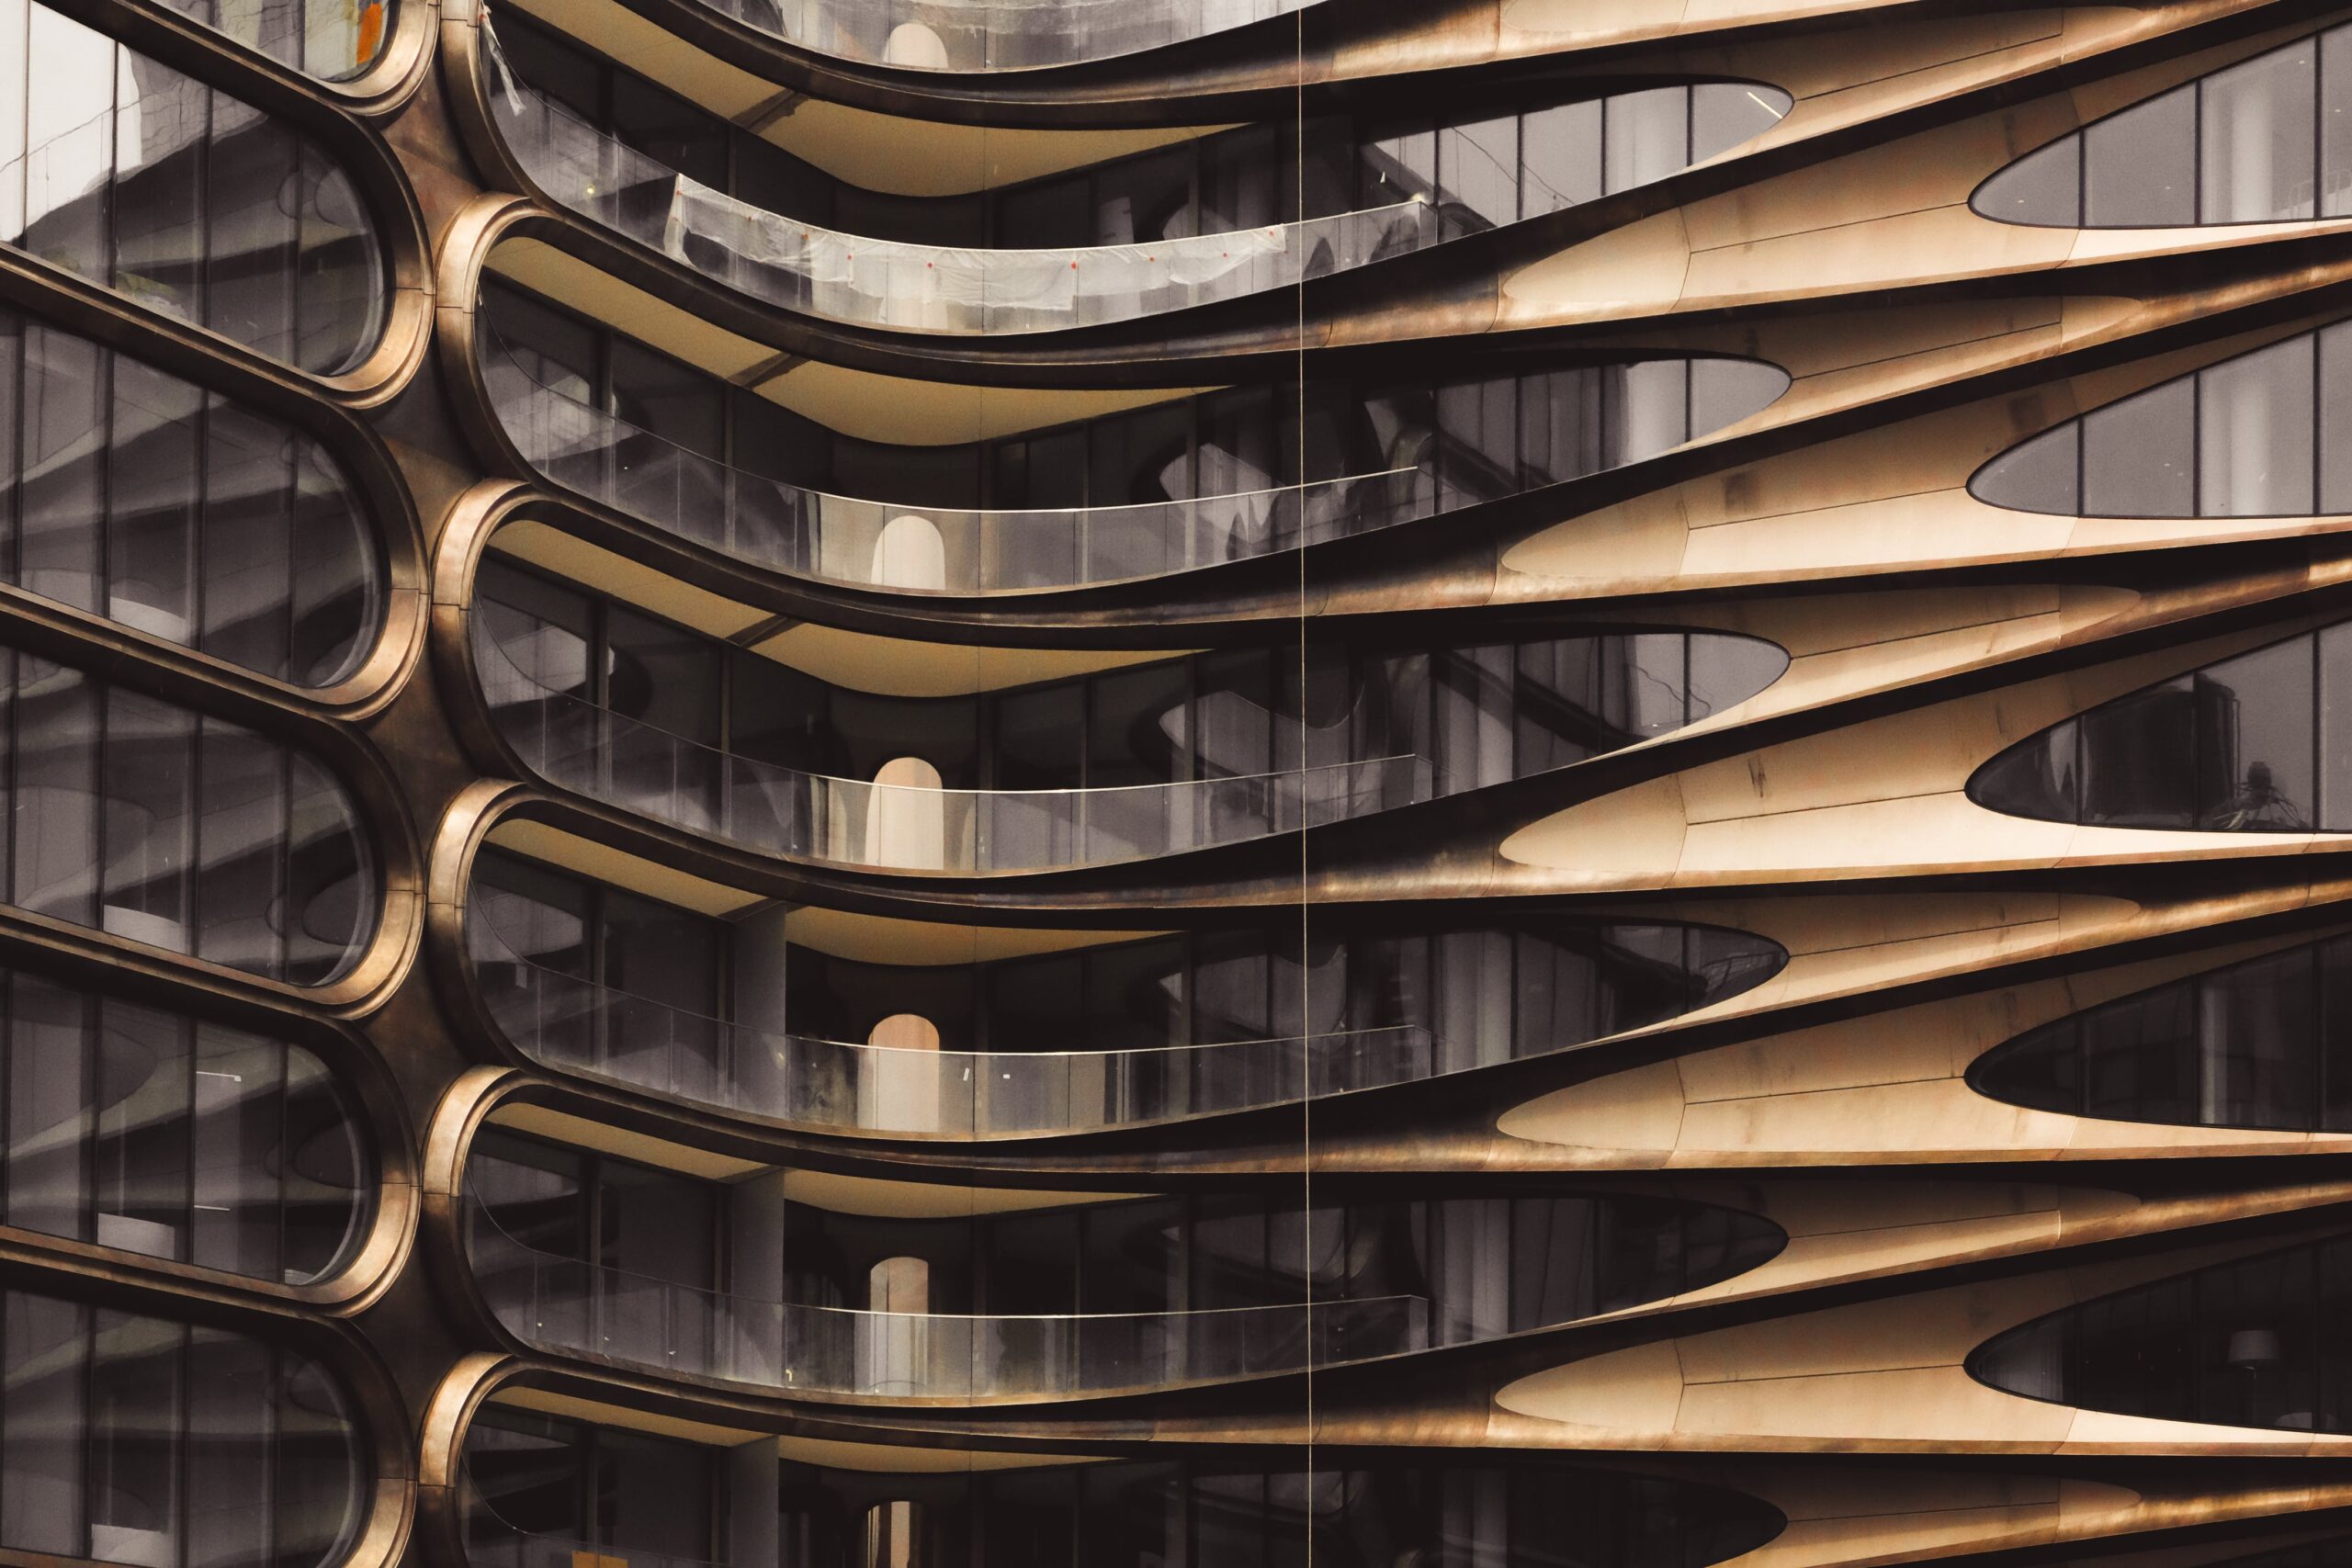 Nowy Europejski Bauhaus – sztuka i design elementami wizji zrównoważonej przyszłości 